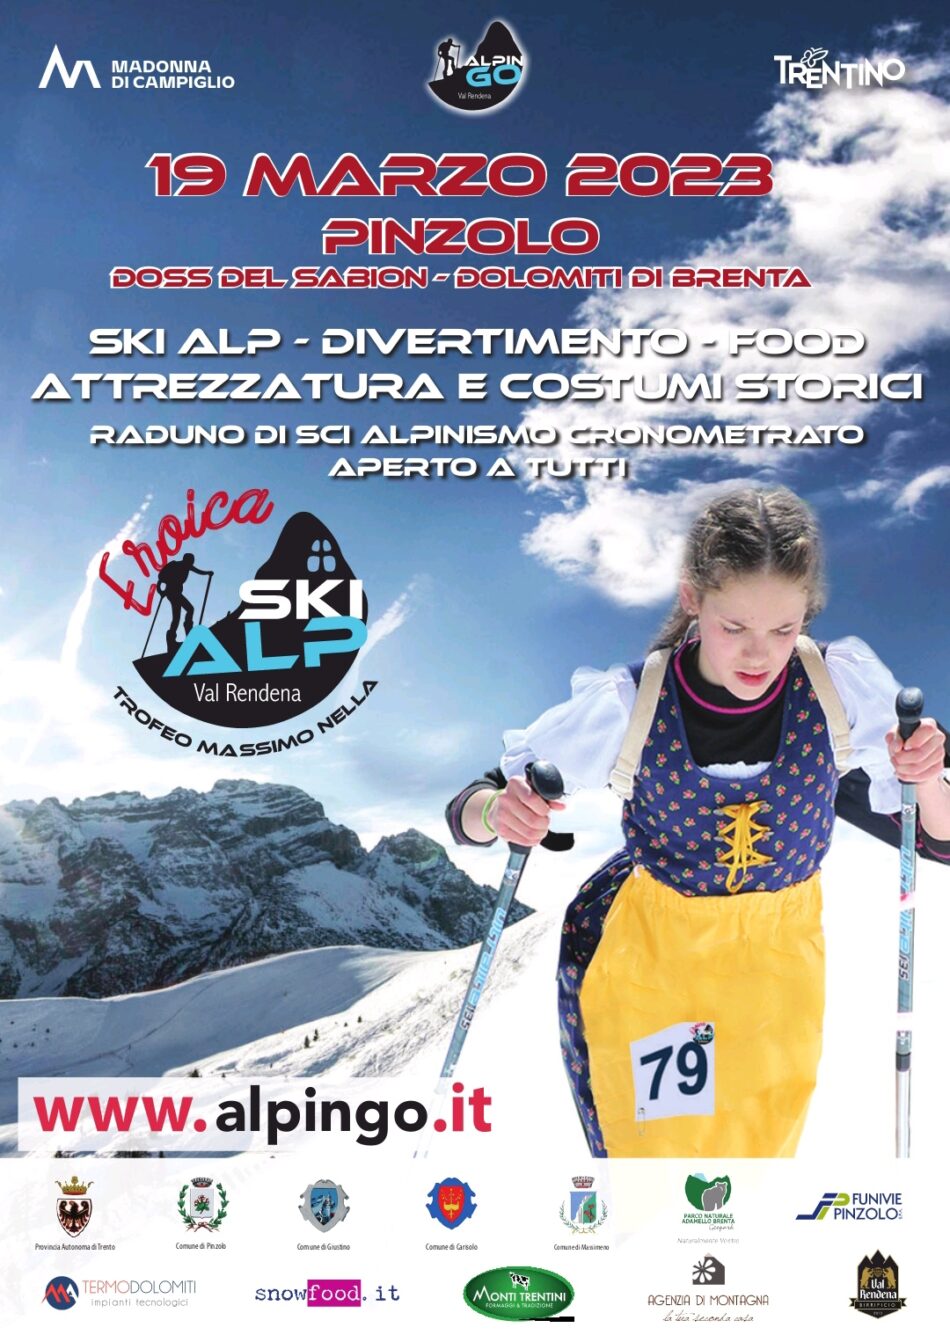 Eroica Ski Alp Val Rendena Trofeo Massimo Nella